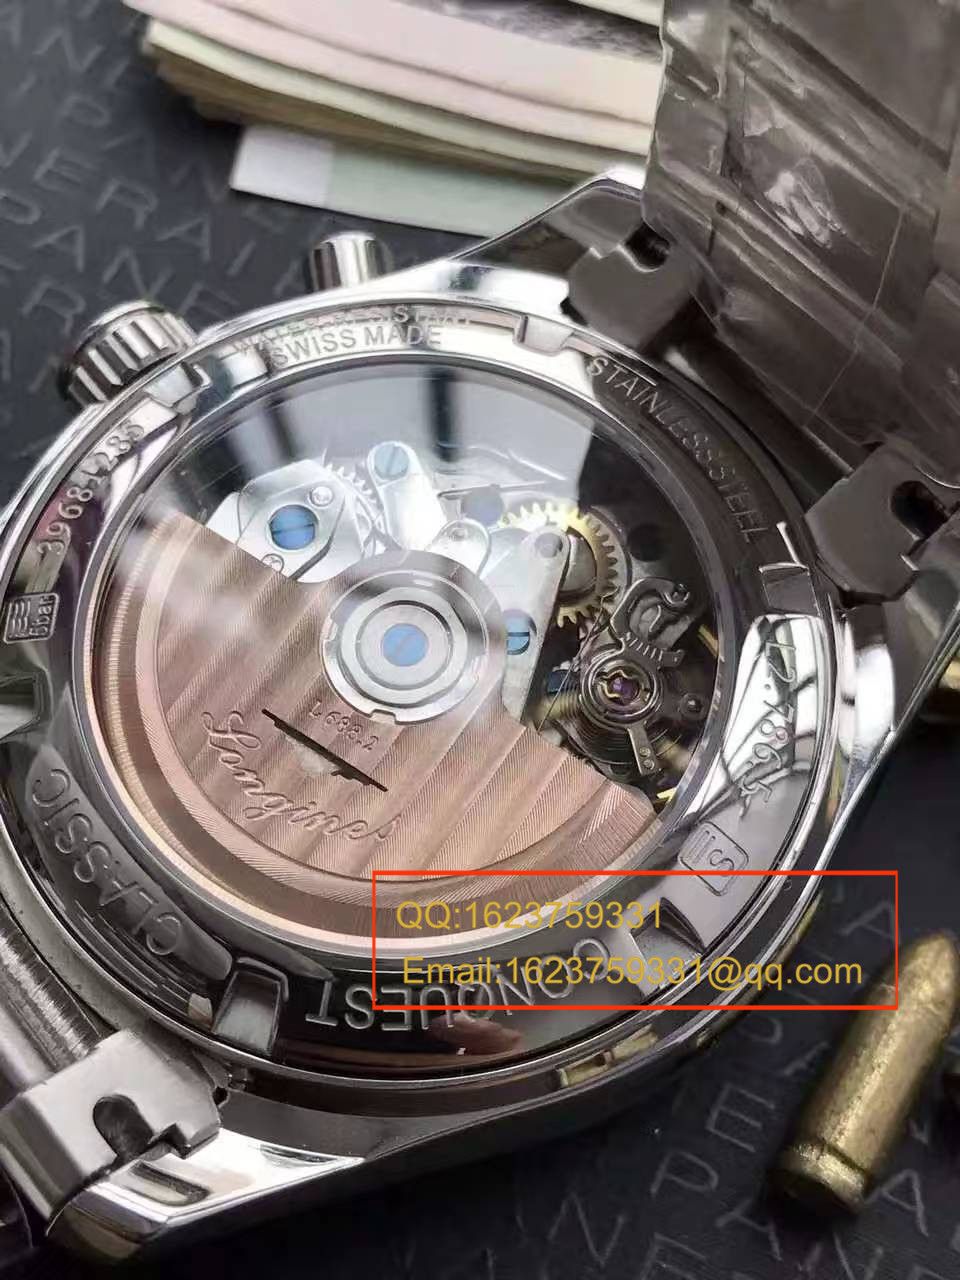 【视频评测YL厂1:1顶级复刻手表】浪琴康铂系列L2.786.4.76男表 / LAF053